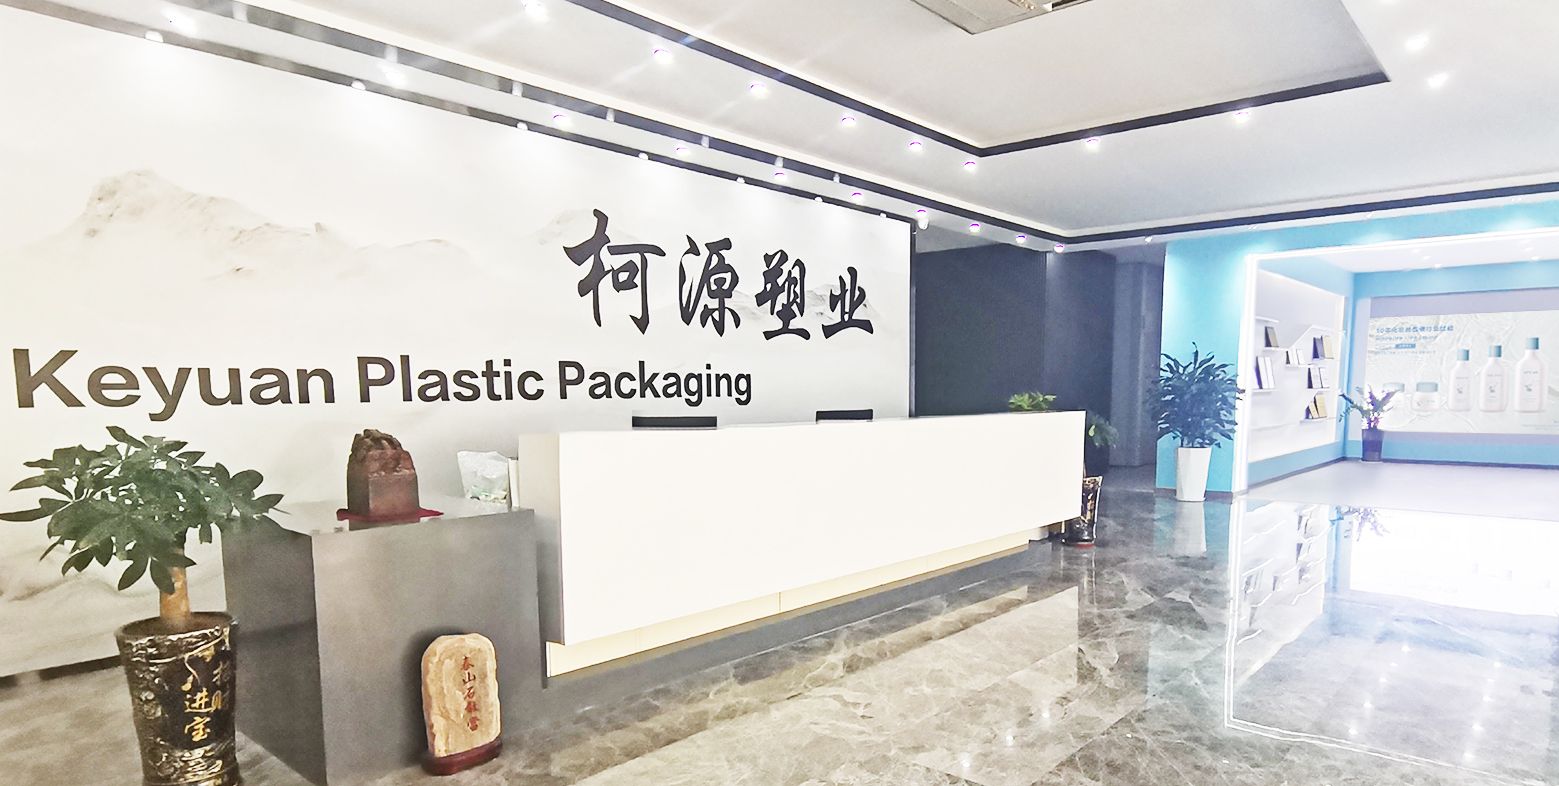 Guangzhou Keyuan Plasticware Co., Ltd.